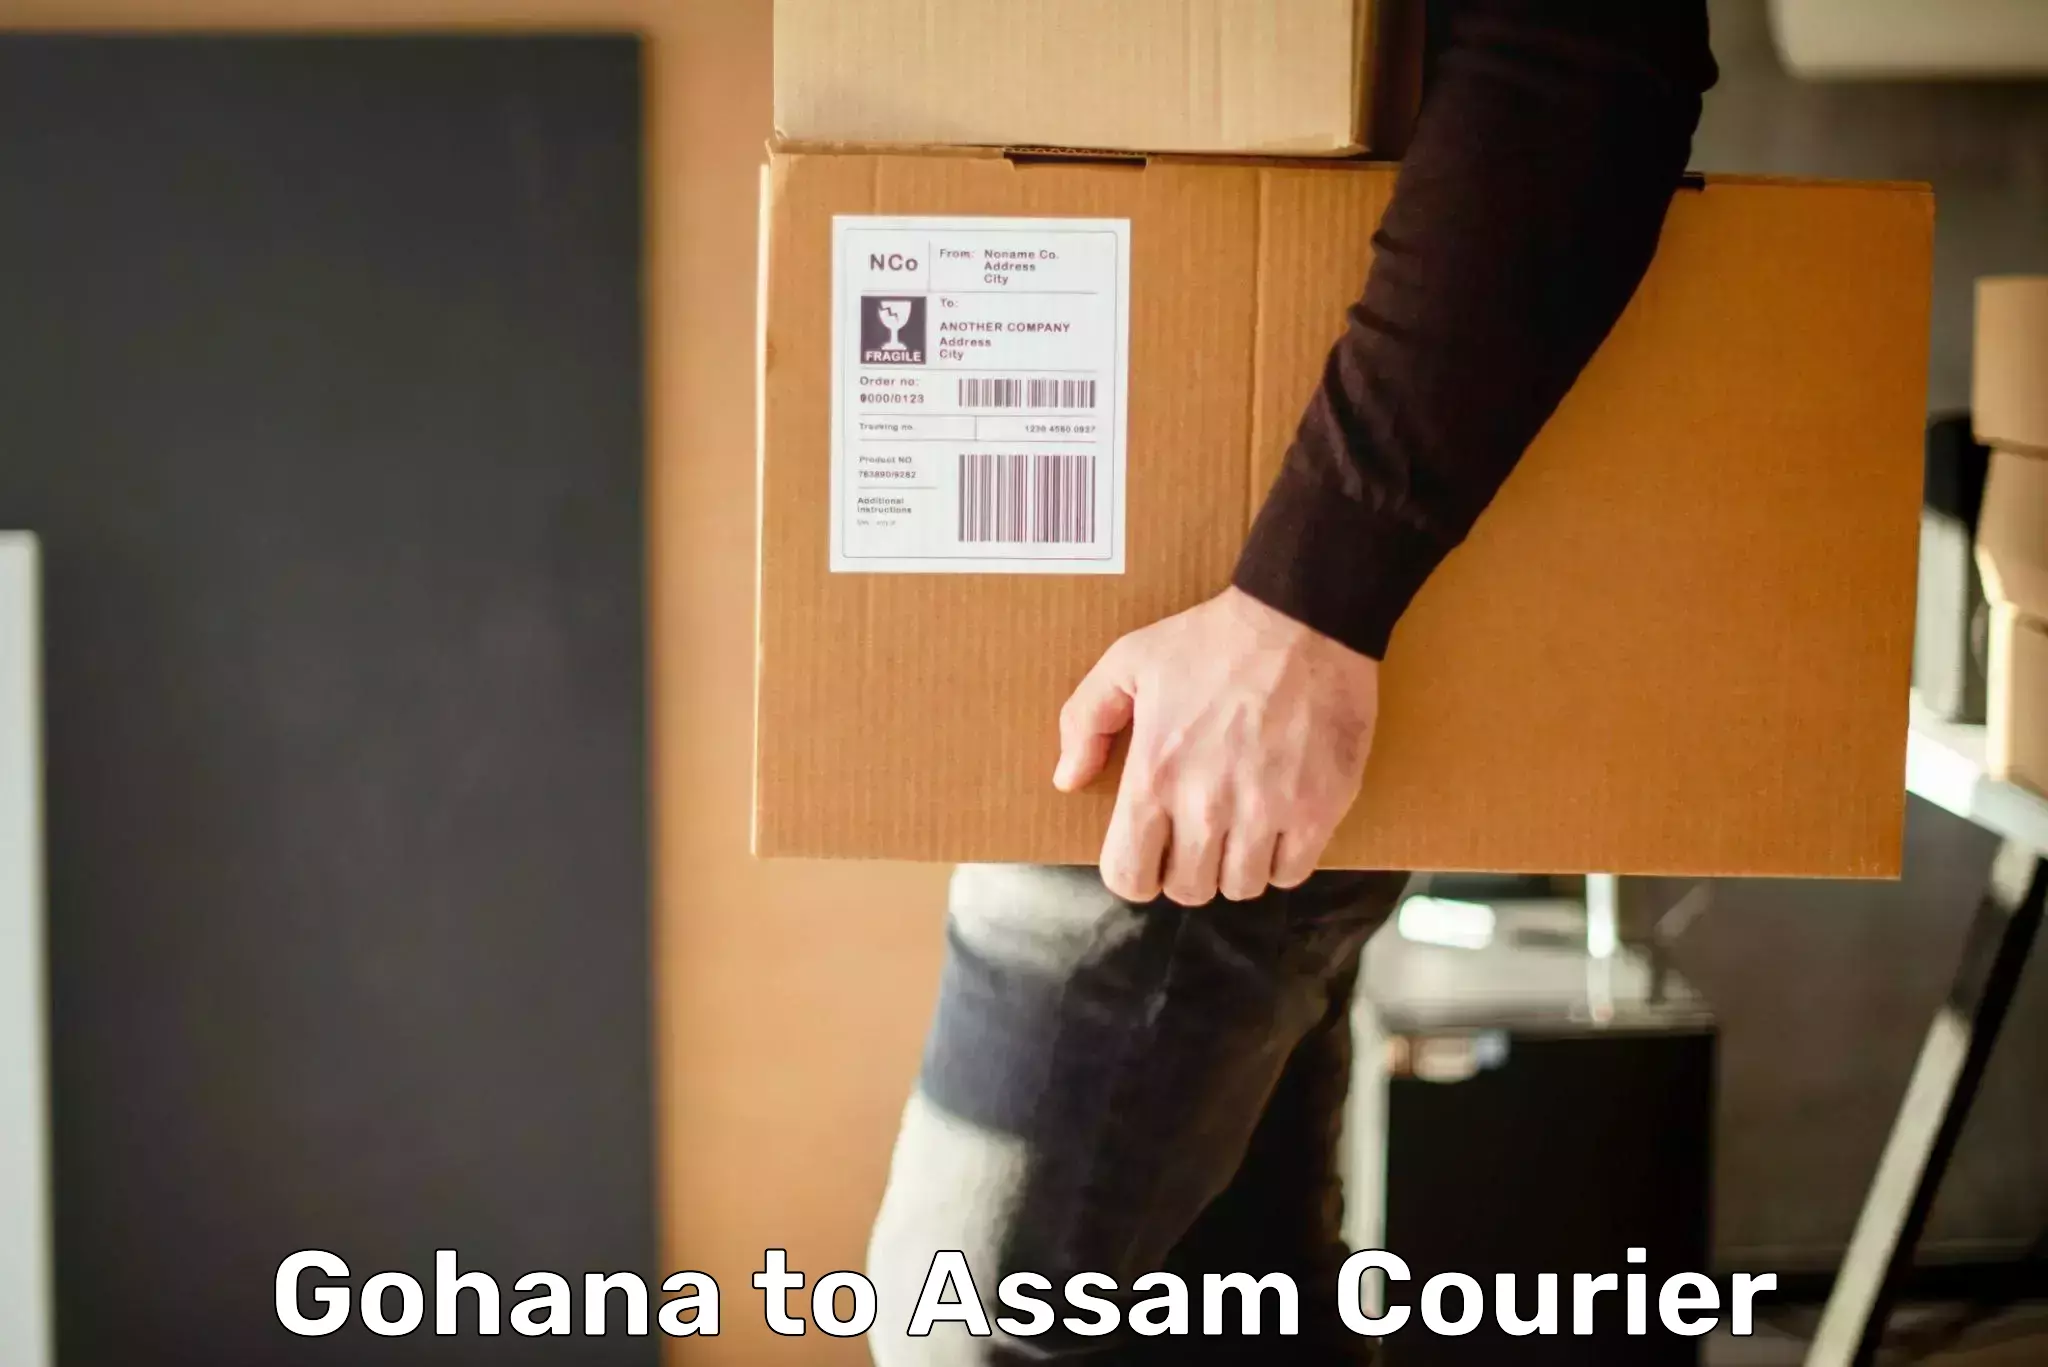 Premium courier services Gohana to Assam